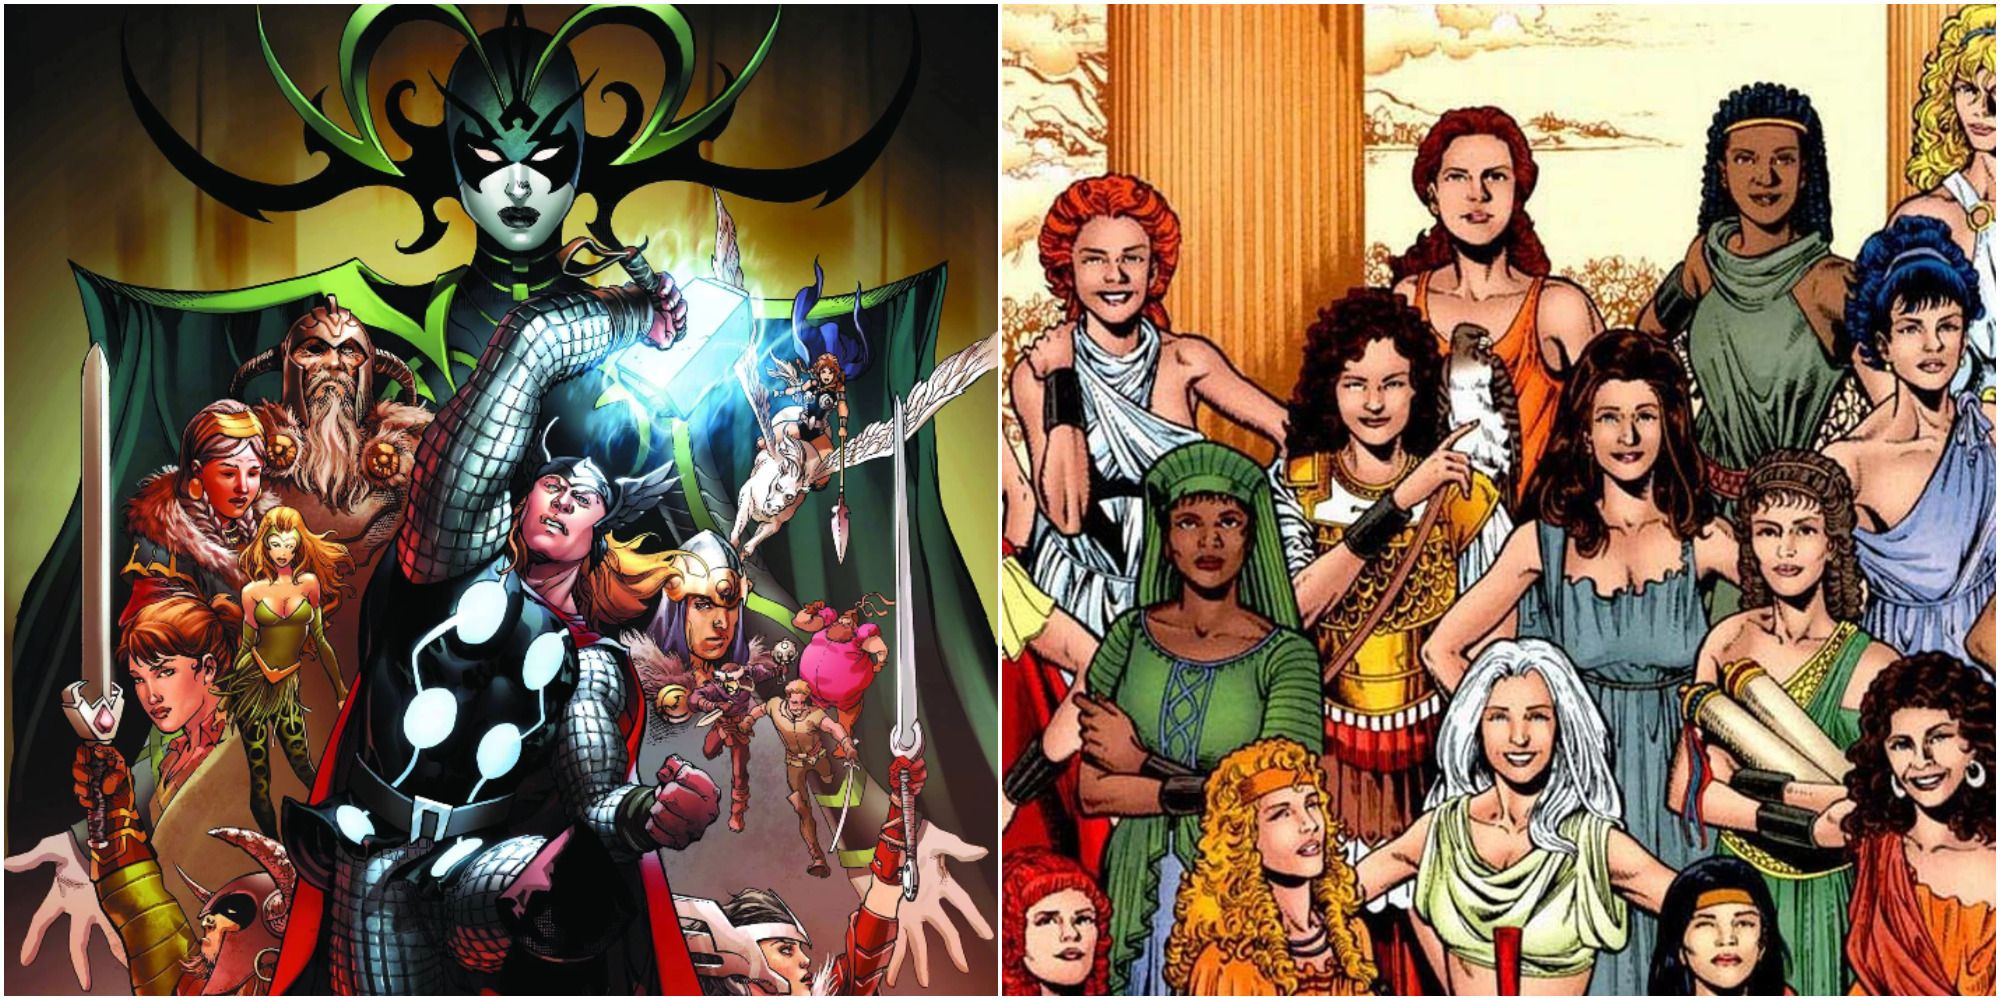 Asgardianos de Marvel vs Amazonas de DC: ¿Quién ganaría?